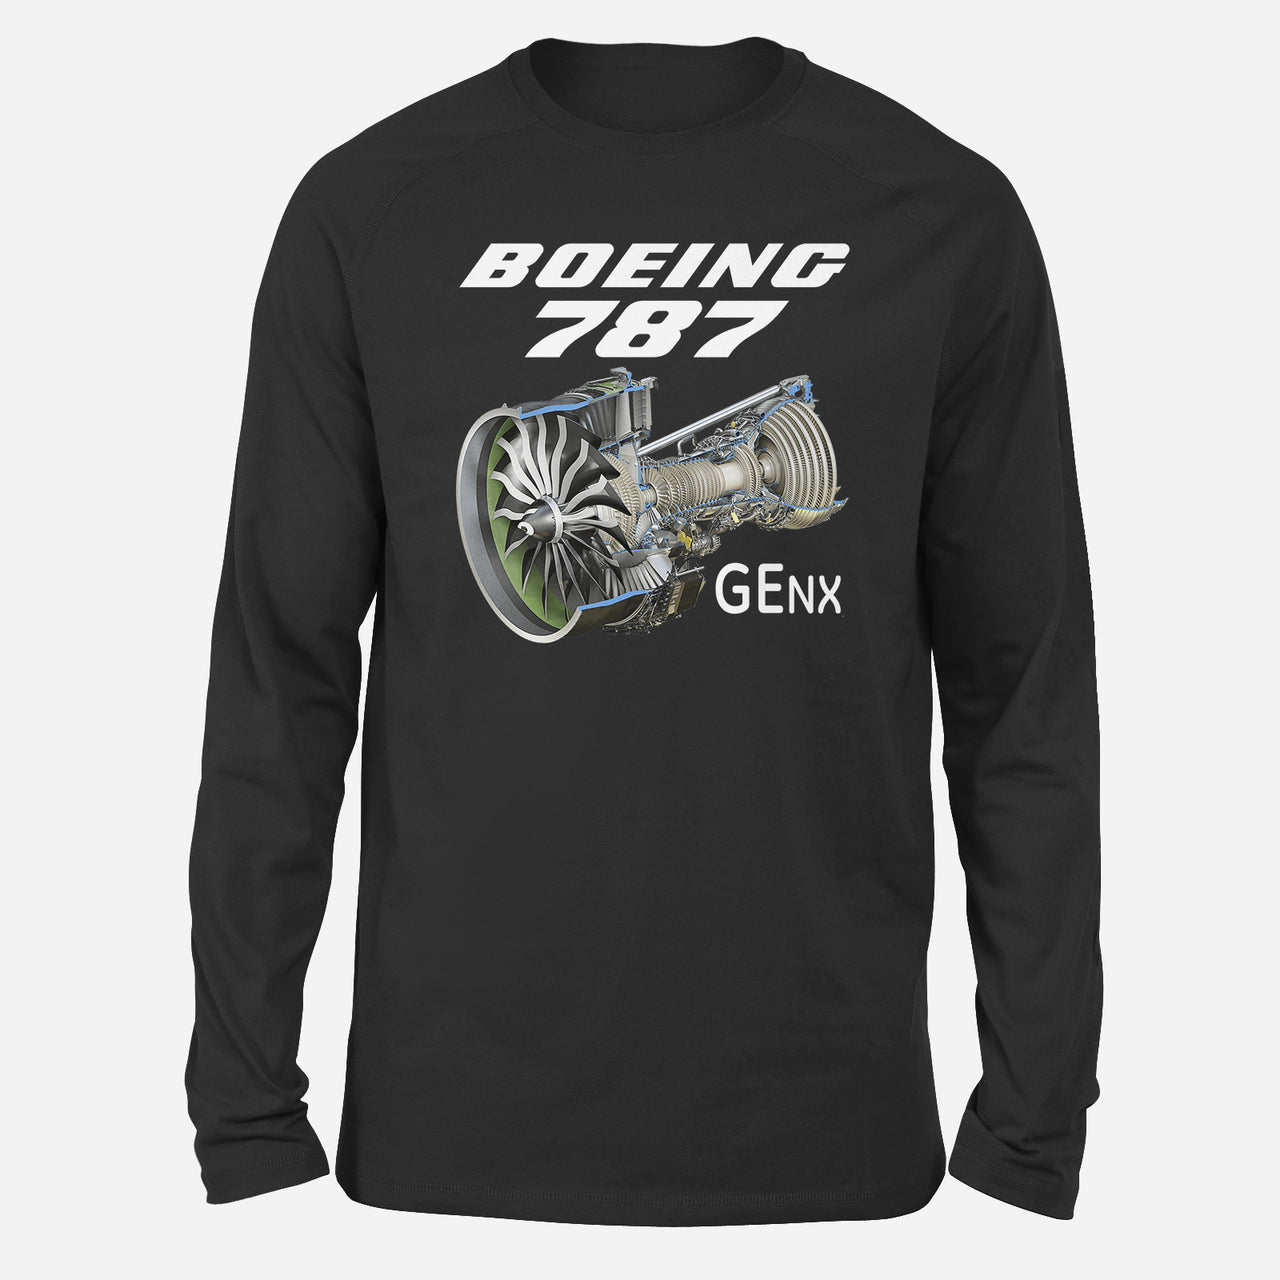 Boeing 787 & GENX Engine Designed Long-Sleeve T-Shirts